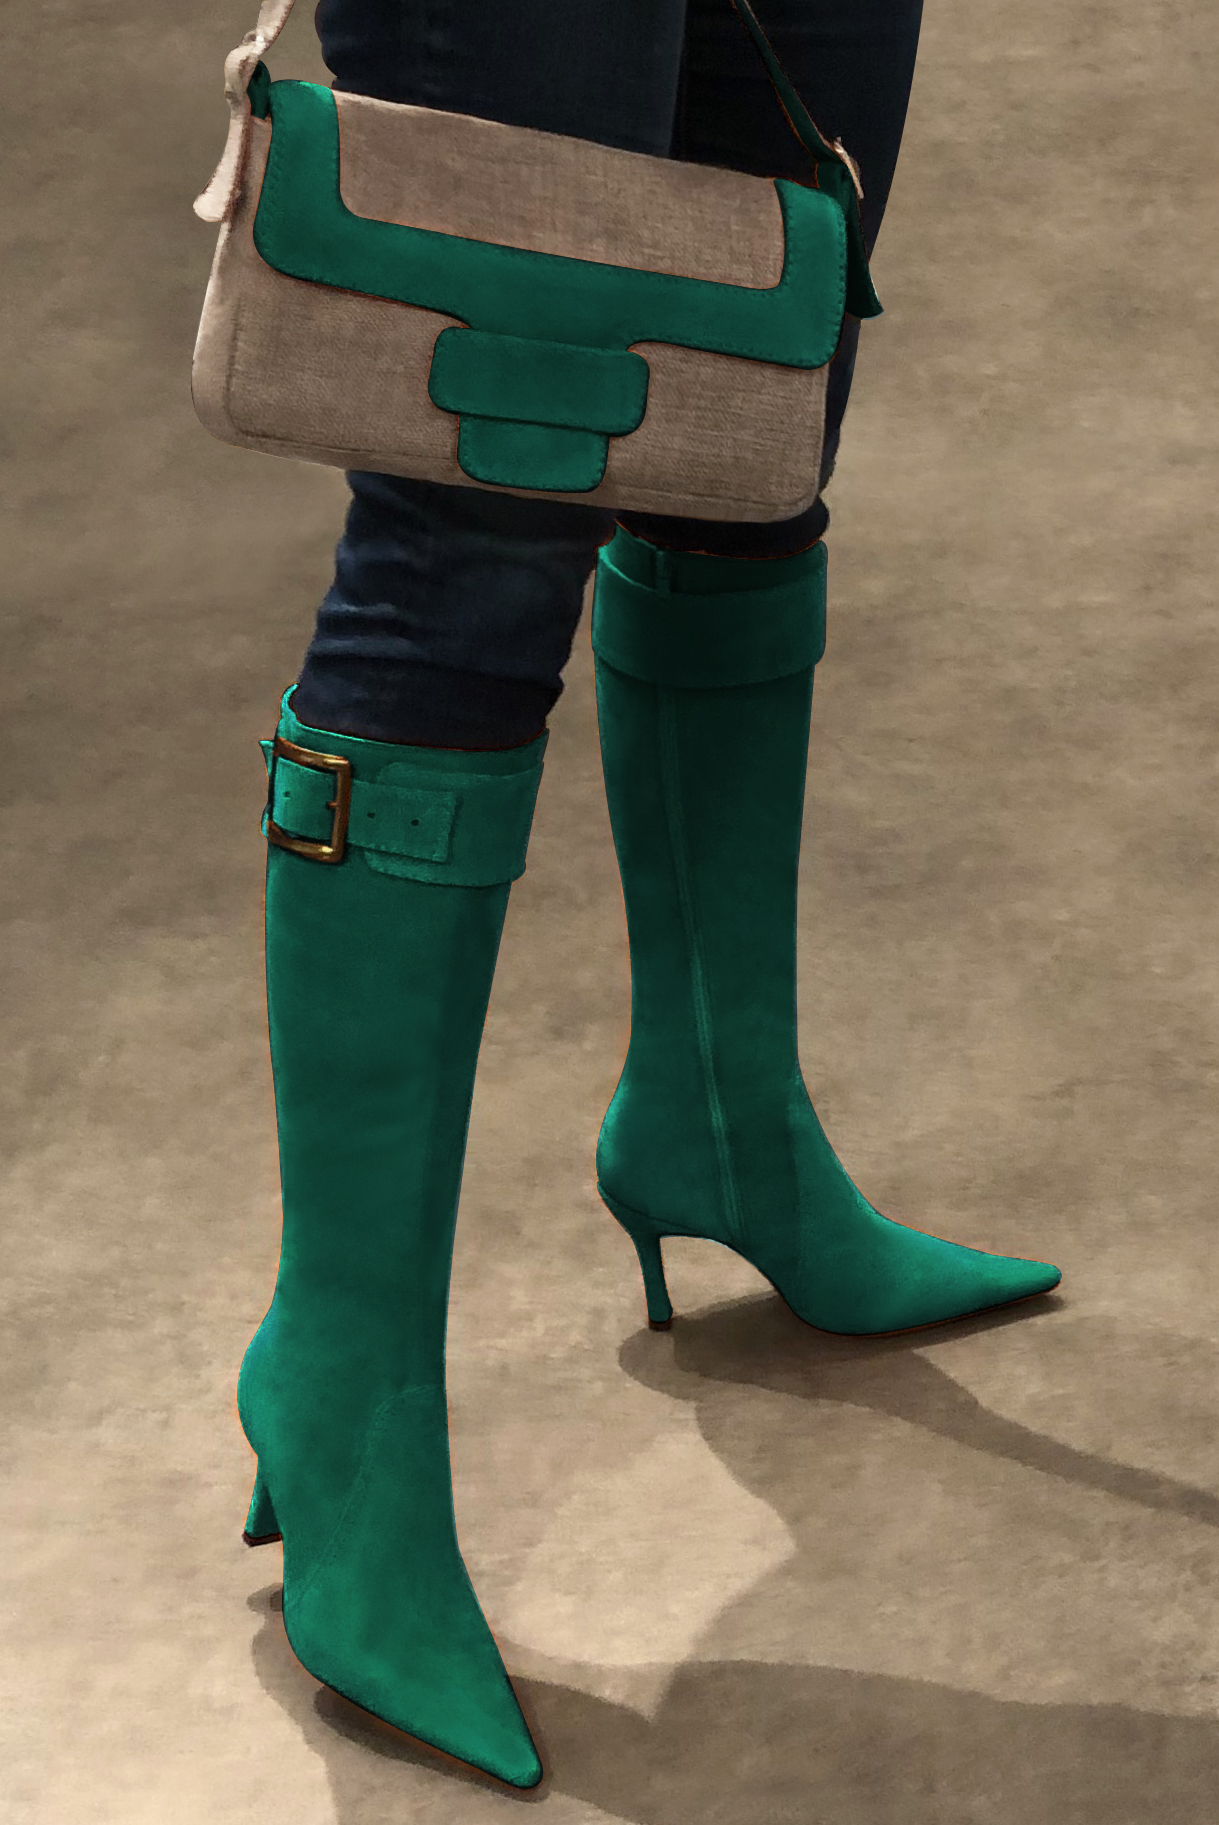 Caramel brown and emerald green women's dress handbag, matching pumps and belts. Worn view - Florence KOOIJMAN